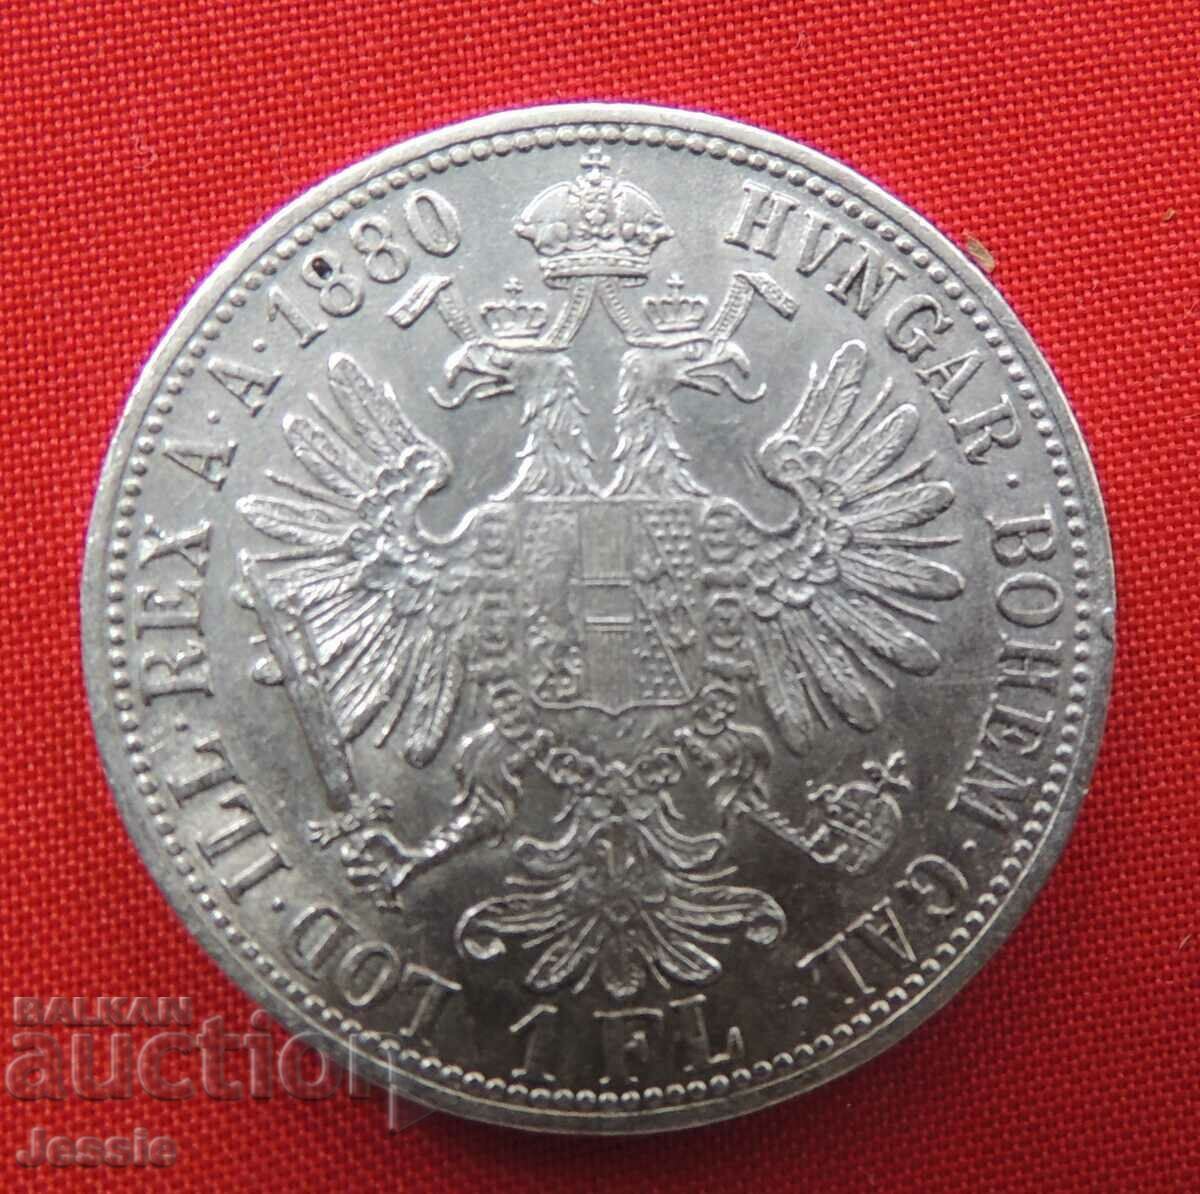 1 florin 1880 ασήμι Αυστροουγγαρίας